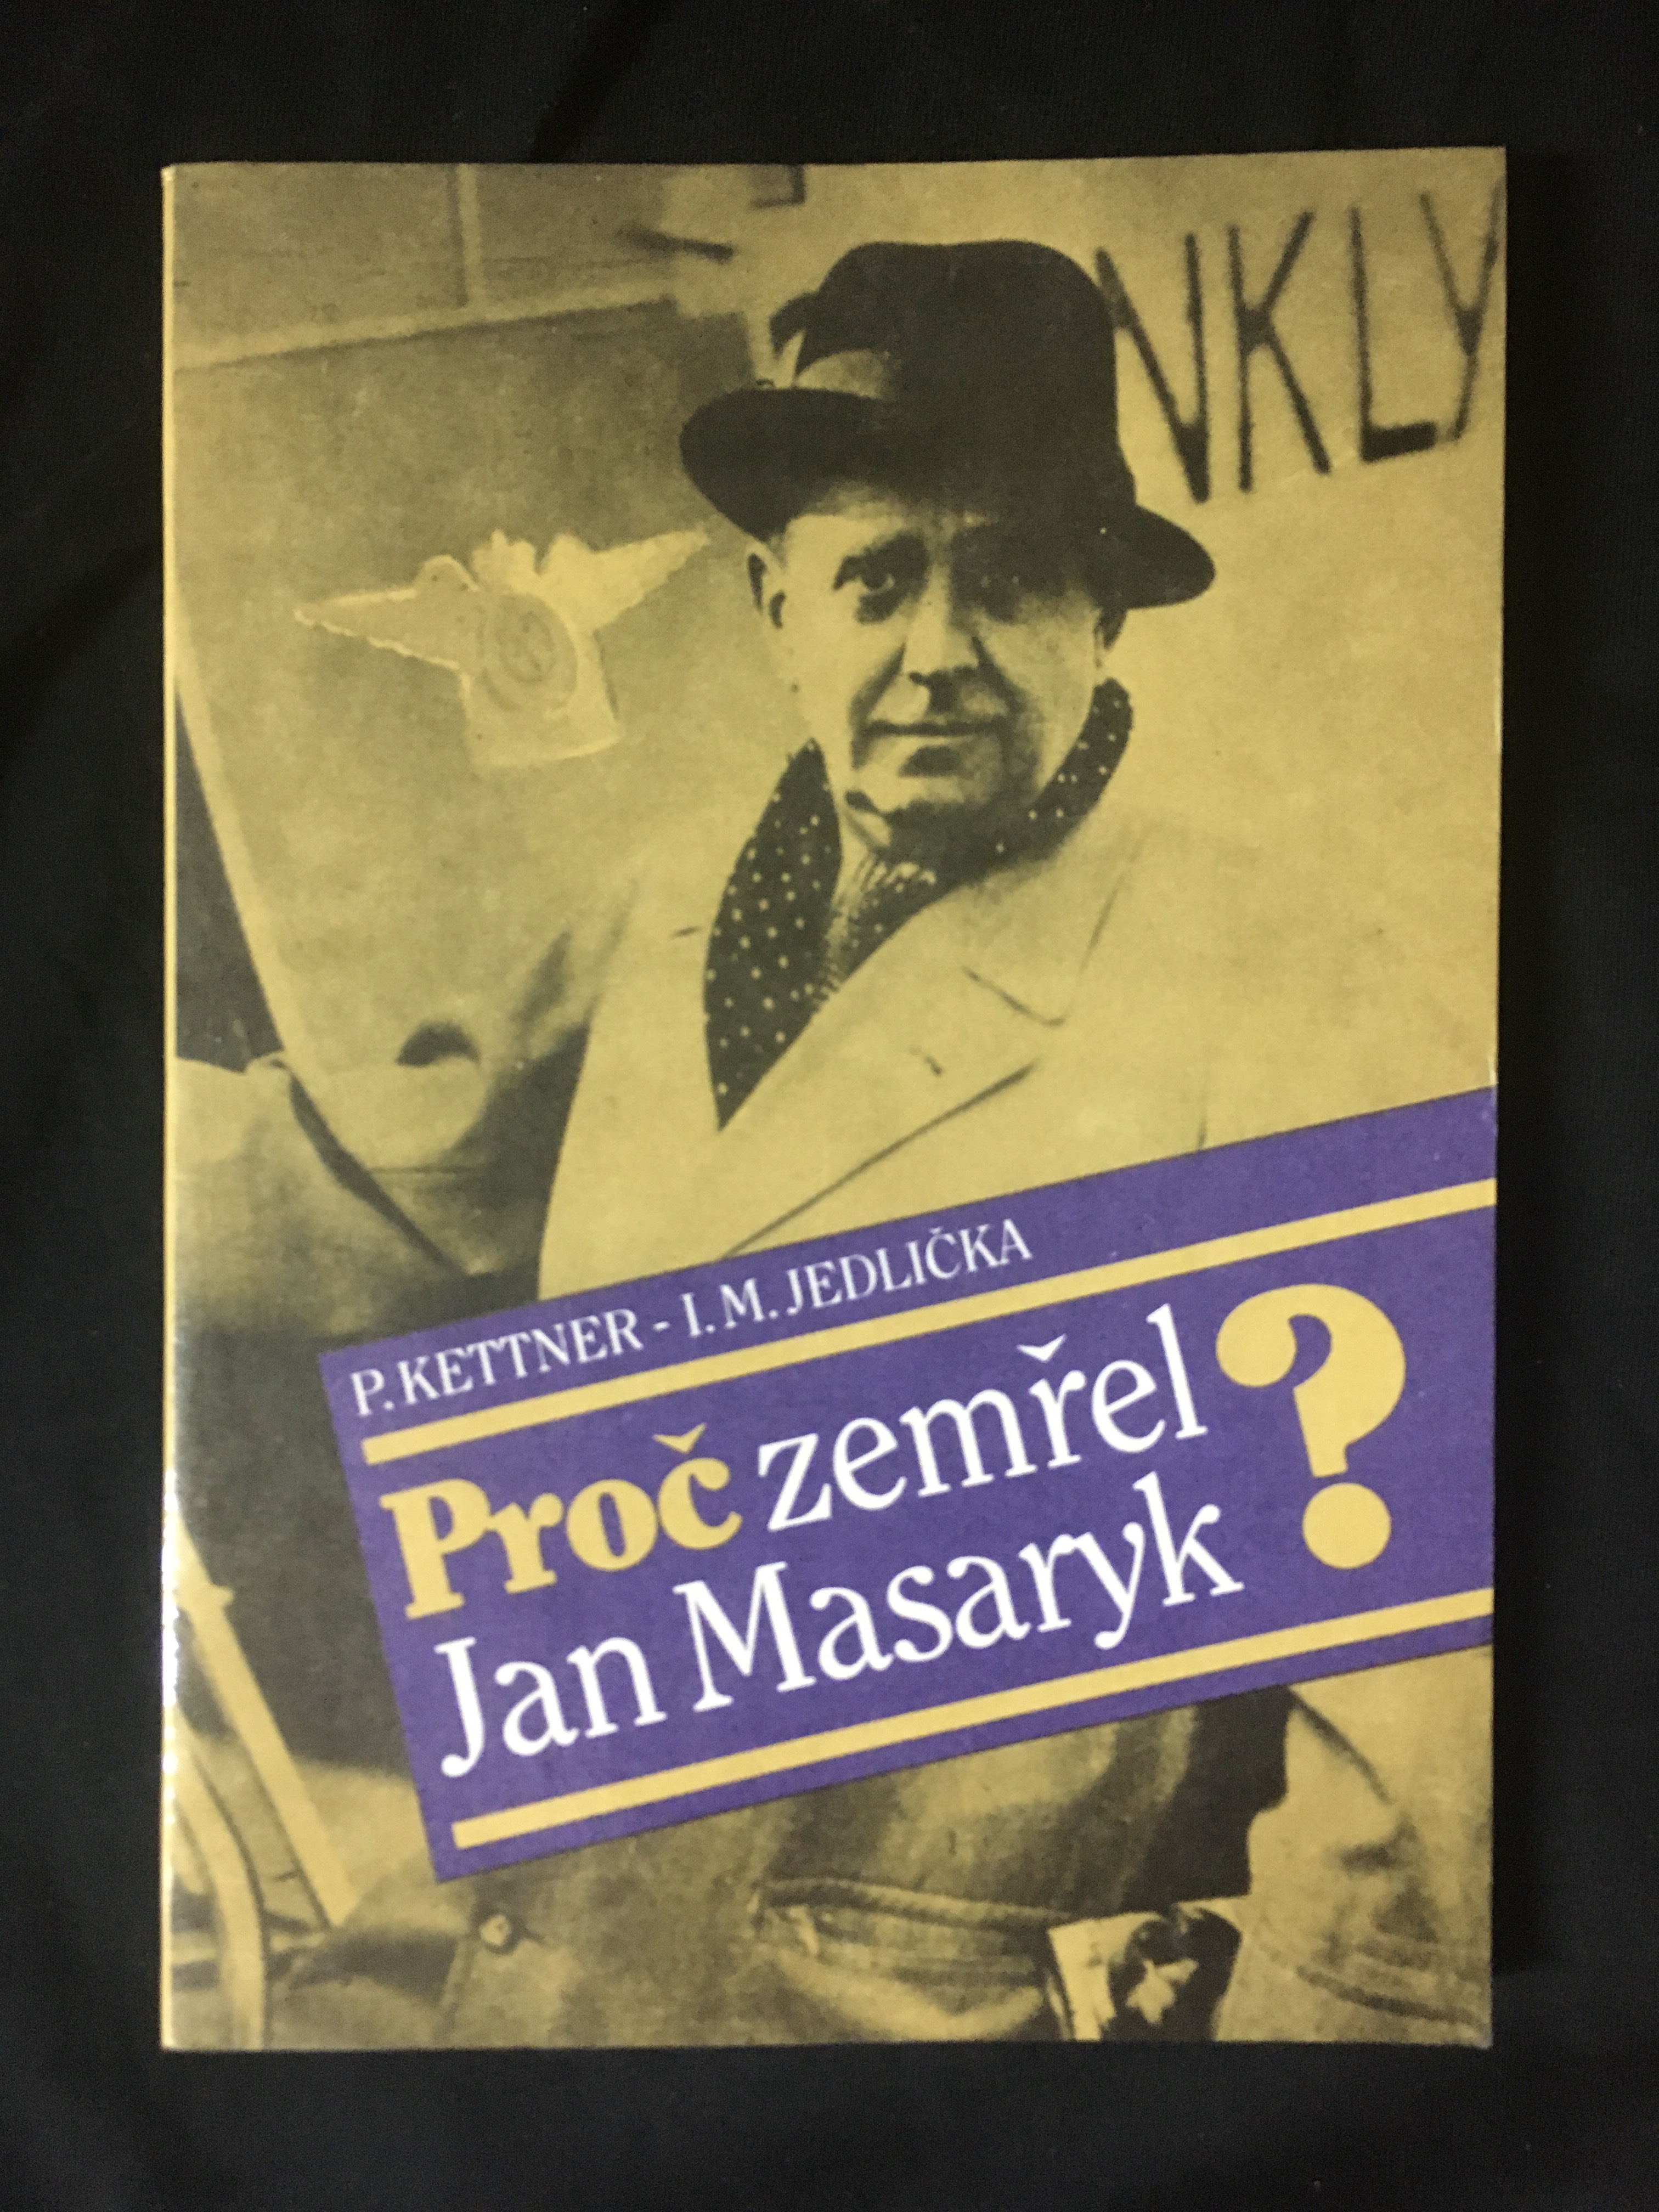 P.Kettner-I.M. Jedlička-Proč zemřel Jan Masaryk